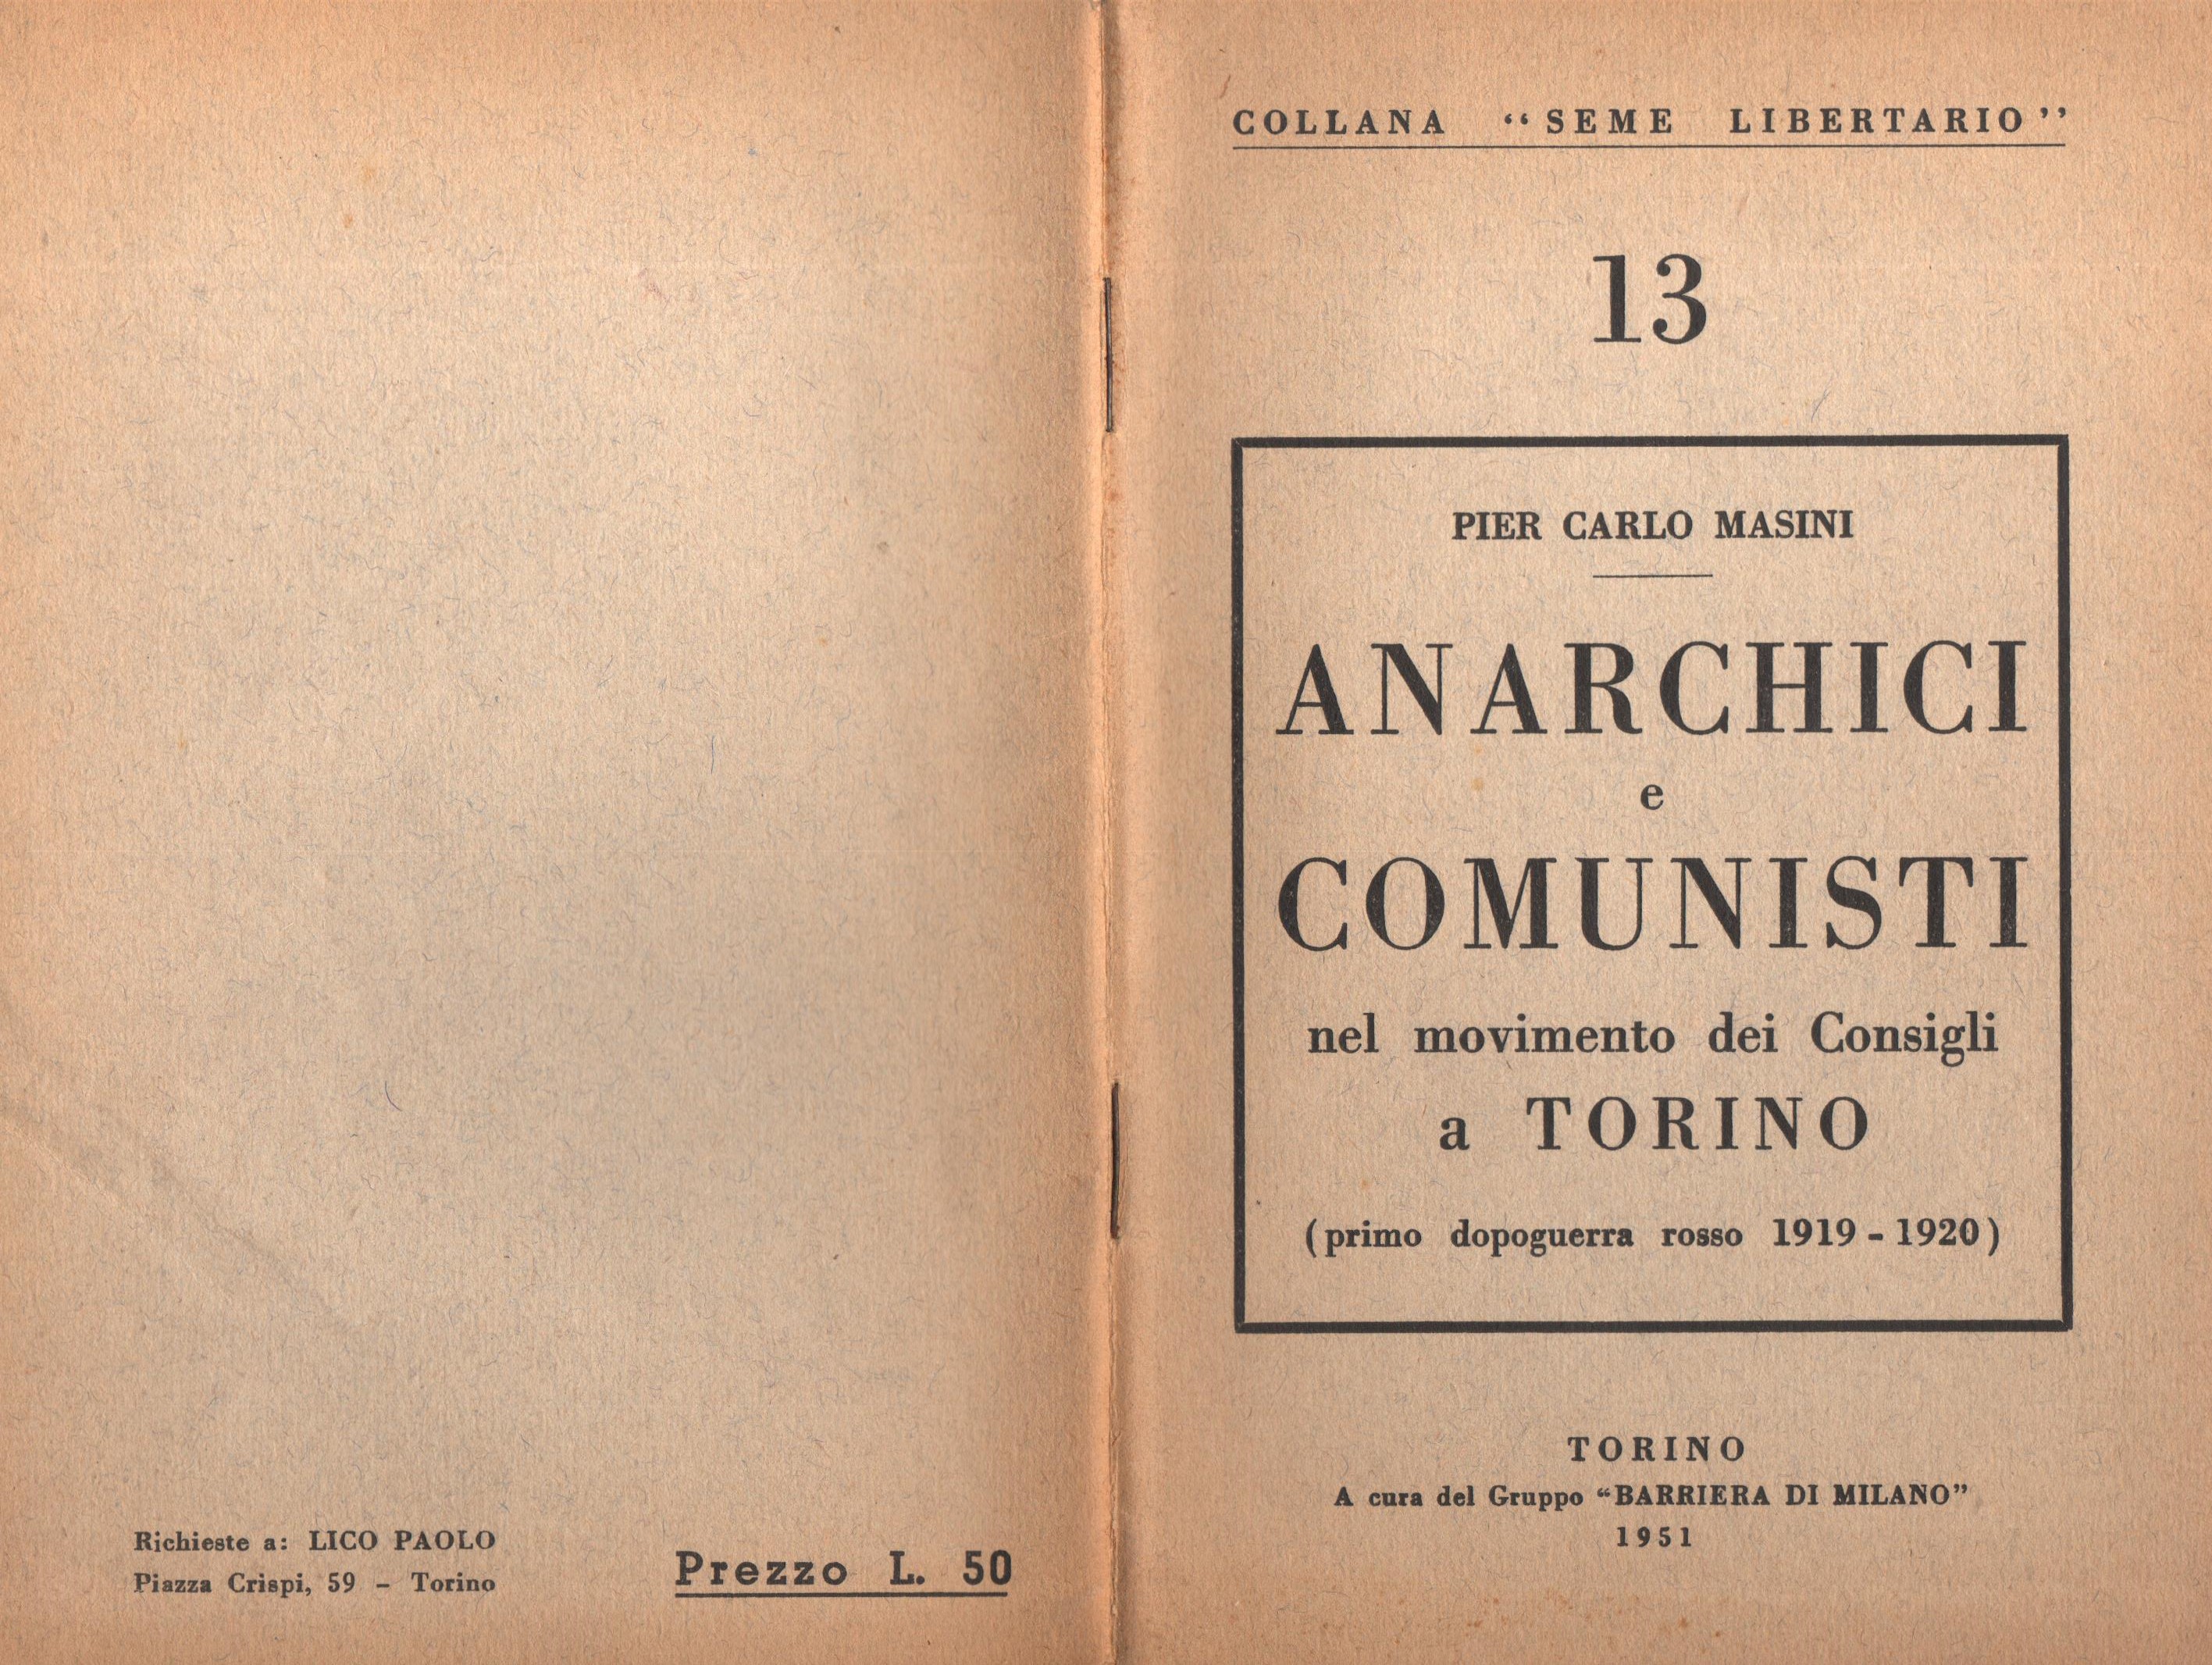 P. C. Masini, Anarchici e comunisti nel movimento dei Consigli a Torino - pag. 1 